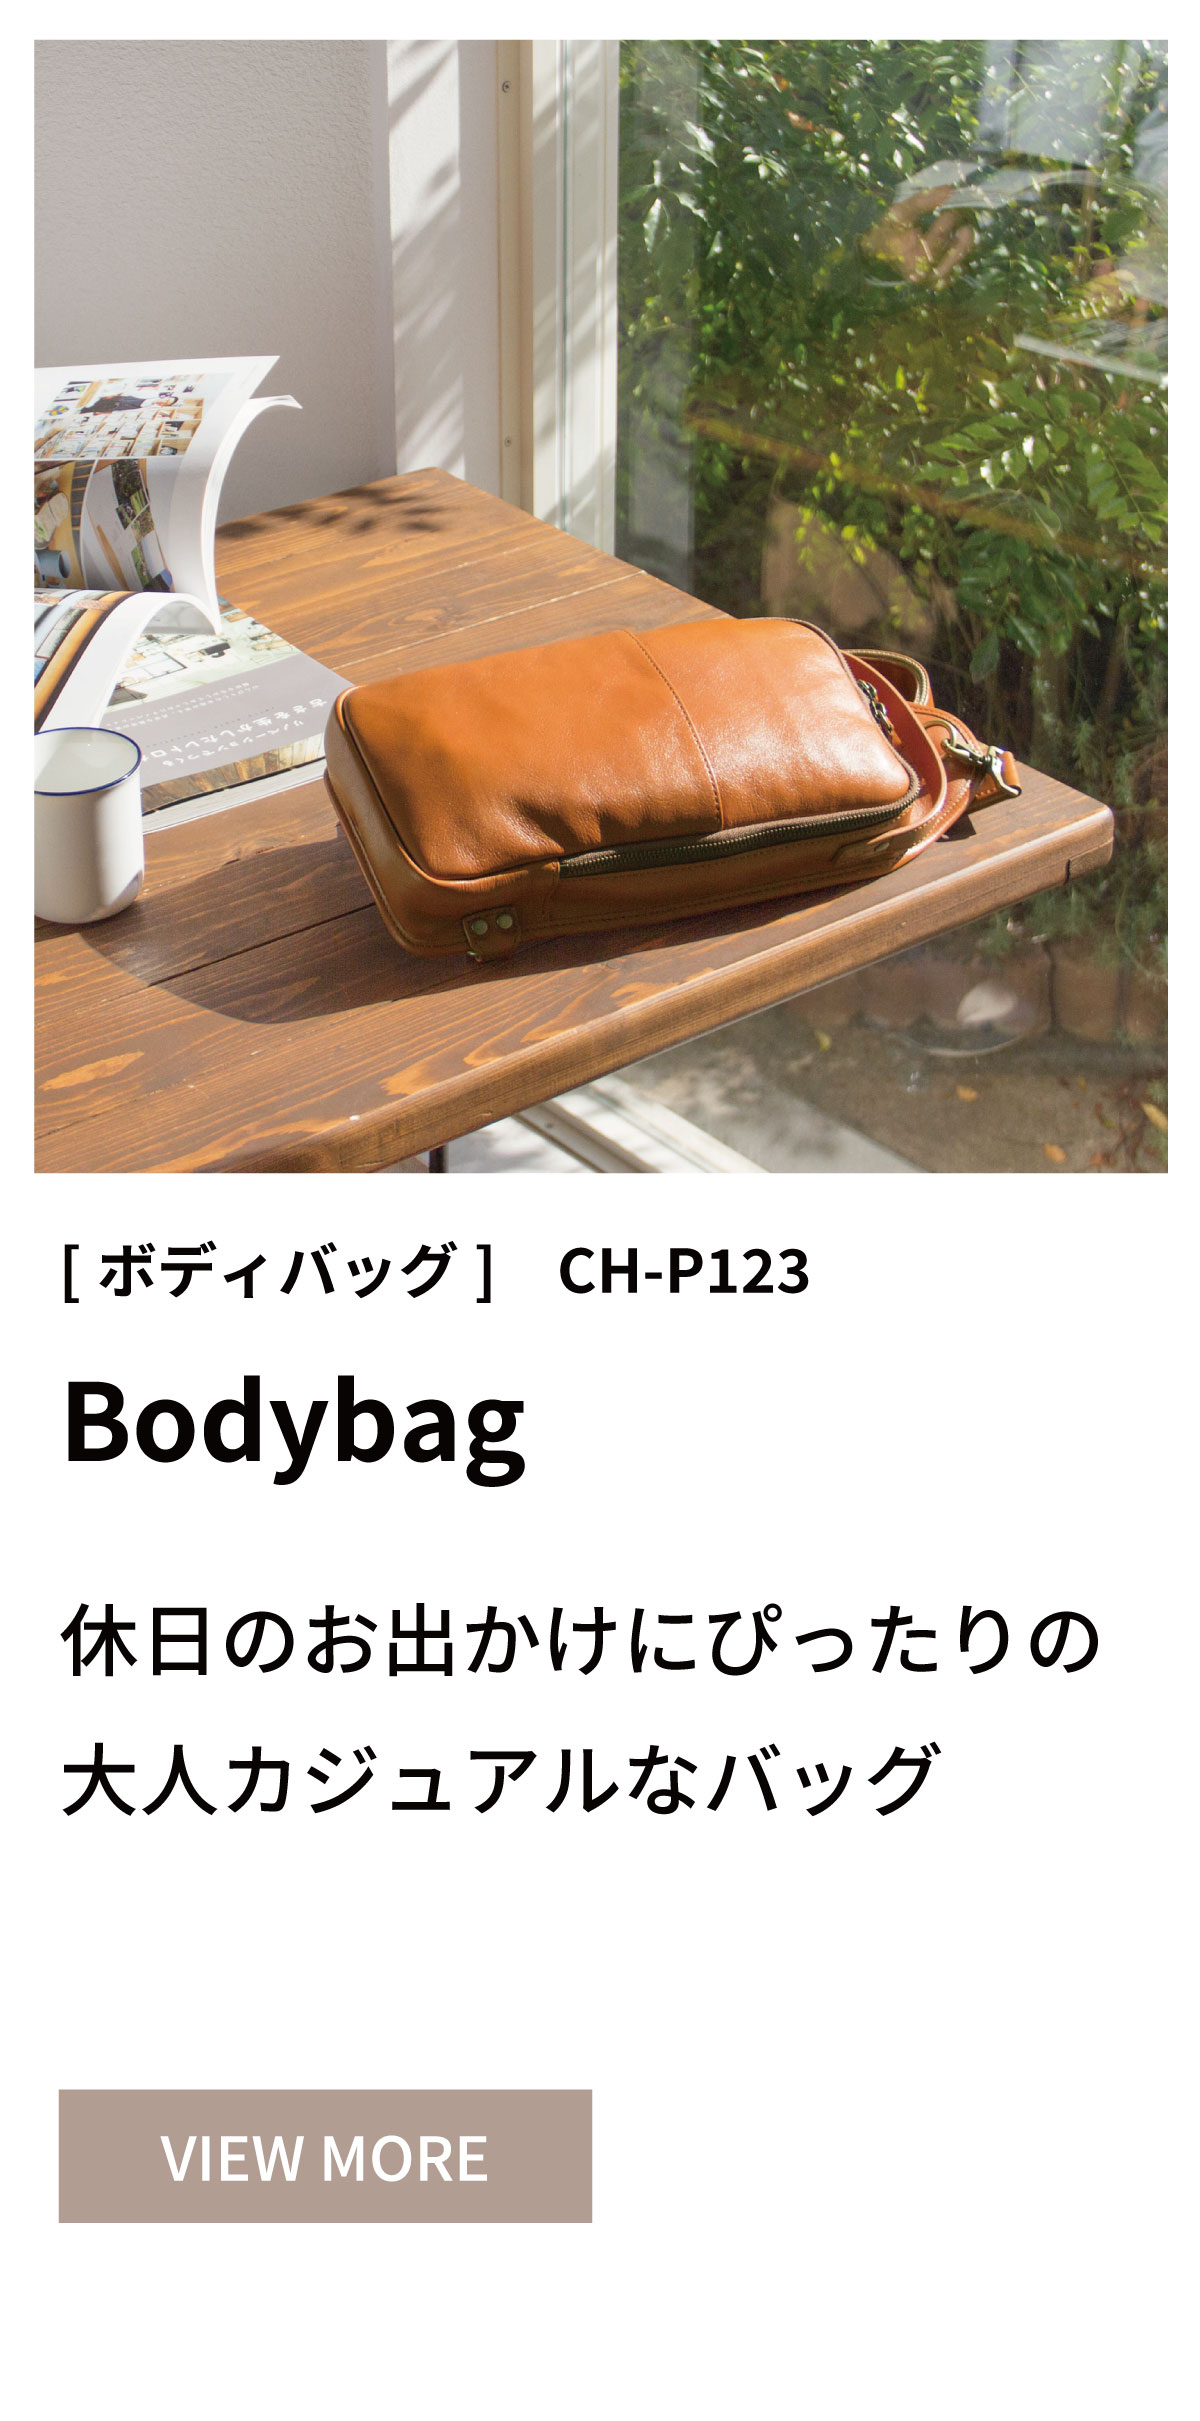 Bodybag